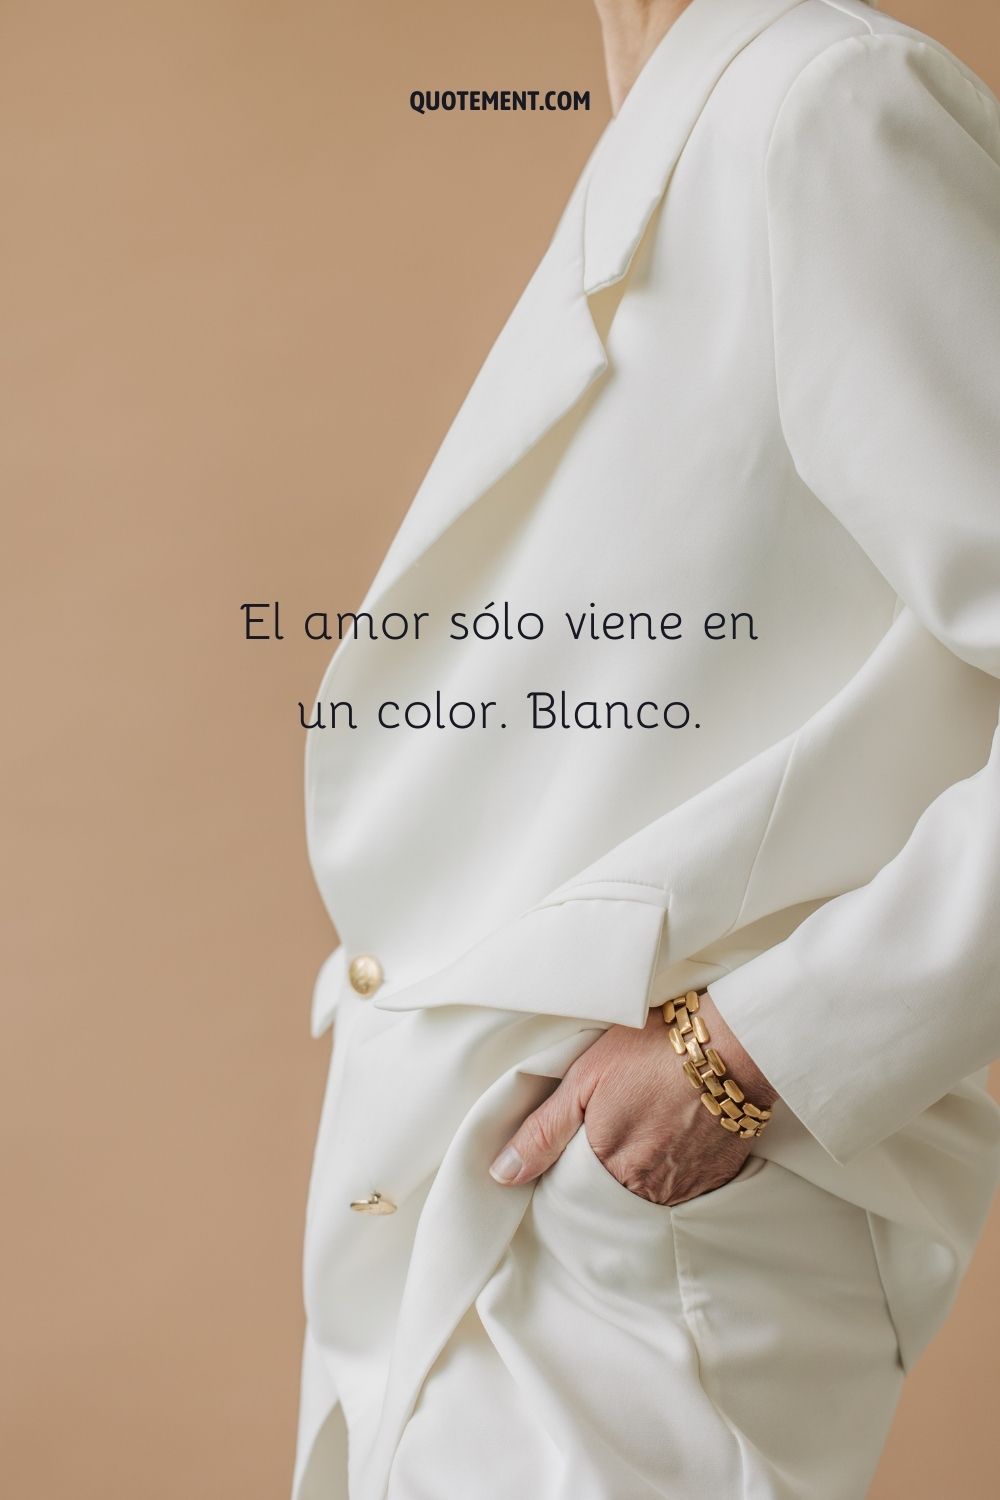 El amor sólo viene en un color. Blanco.